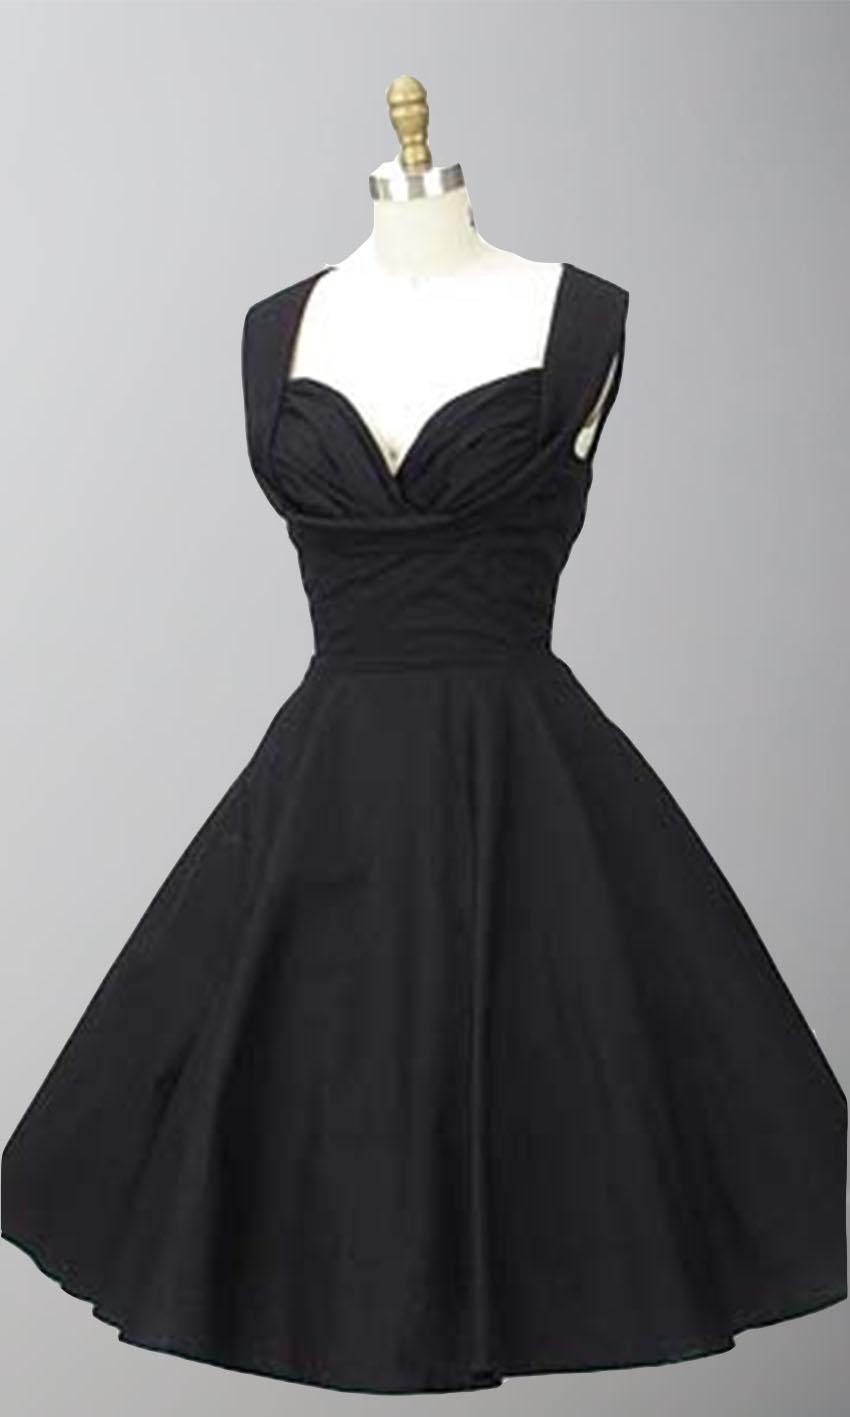 زفاف - 1950s Inspired Shelf Bust Straps Little Black Dresses KSP376 for Wedding Party